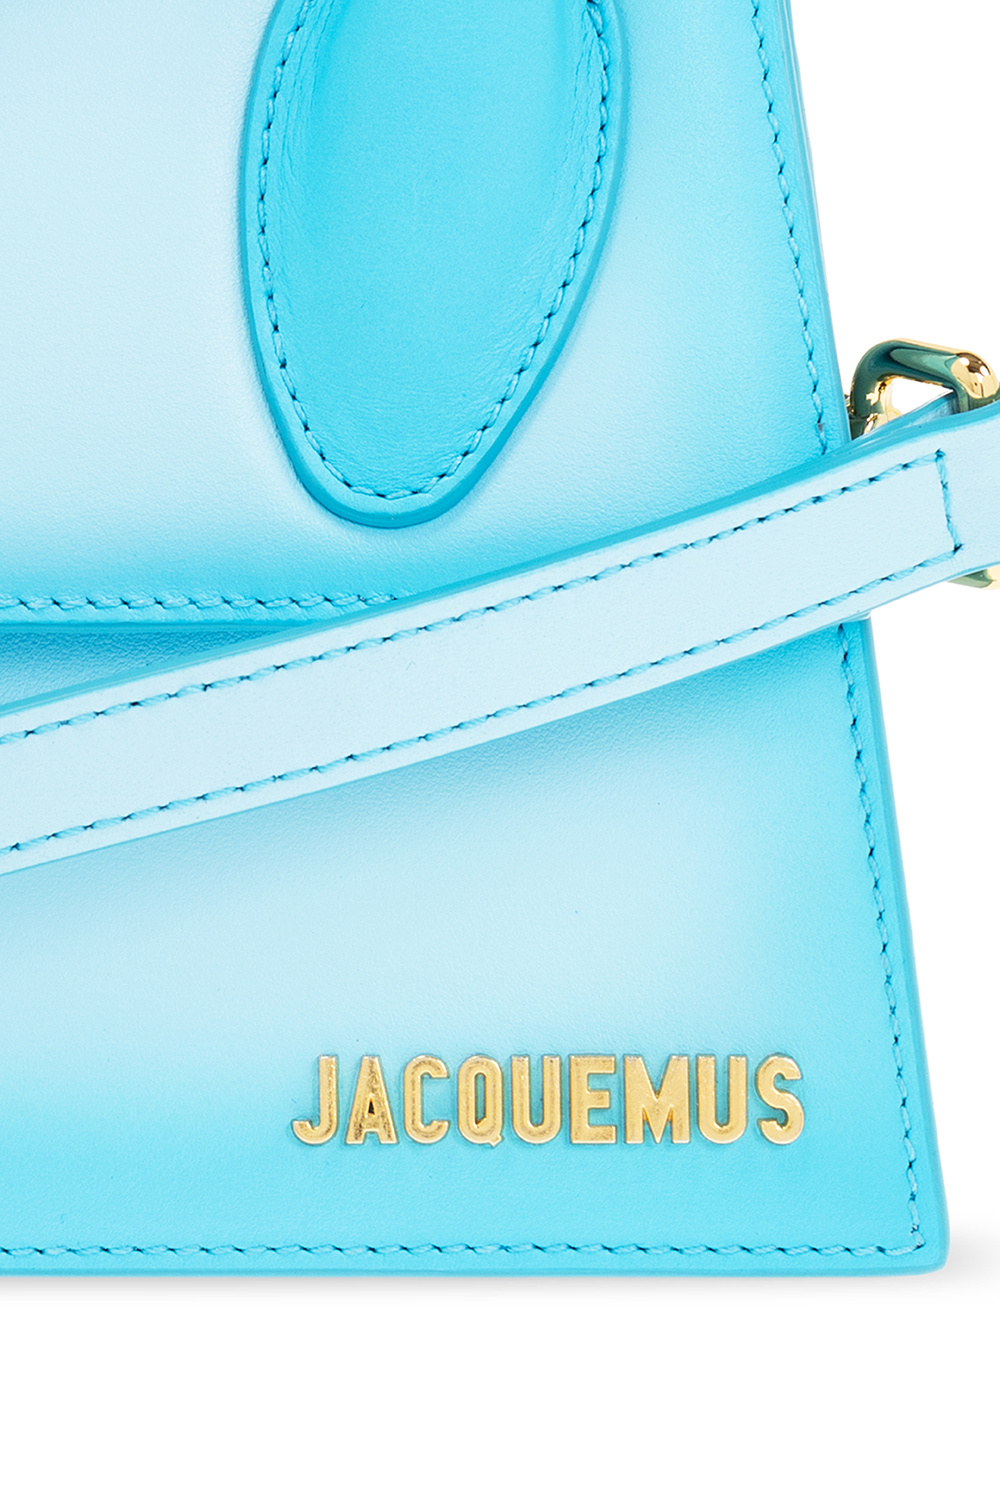 Jacquemus ‘Le Chiquito Noeud’ shoulder bag